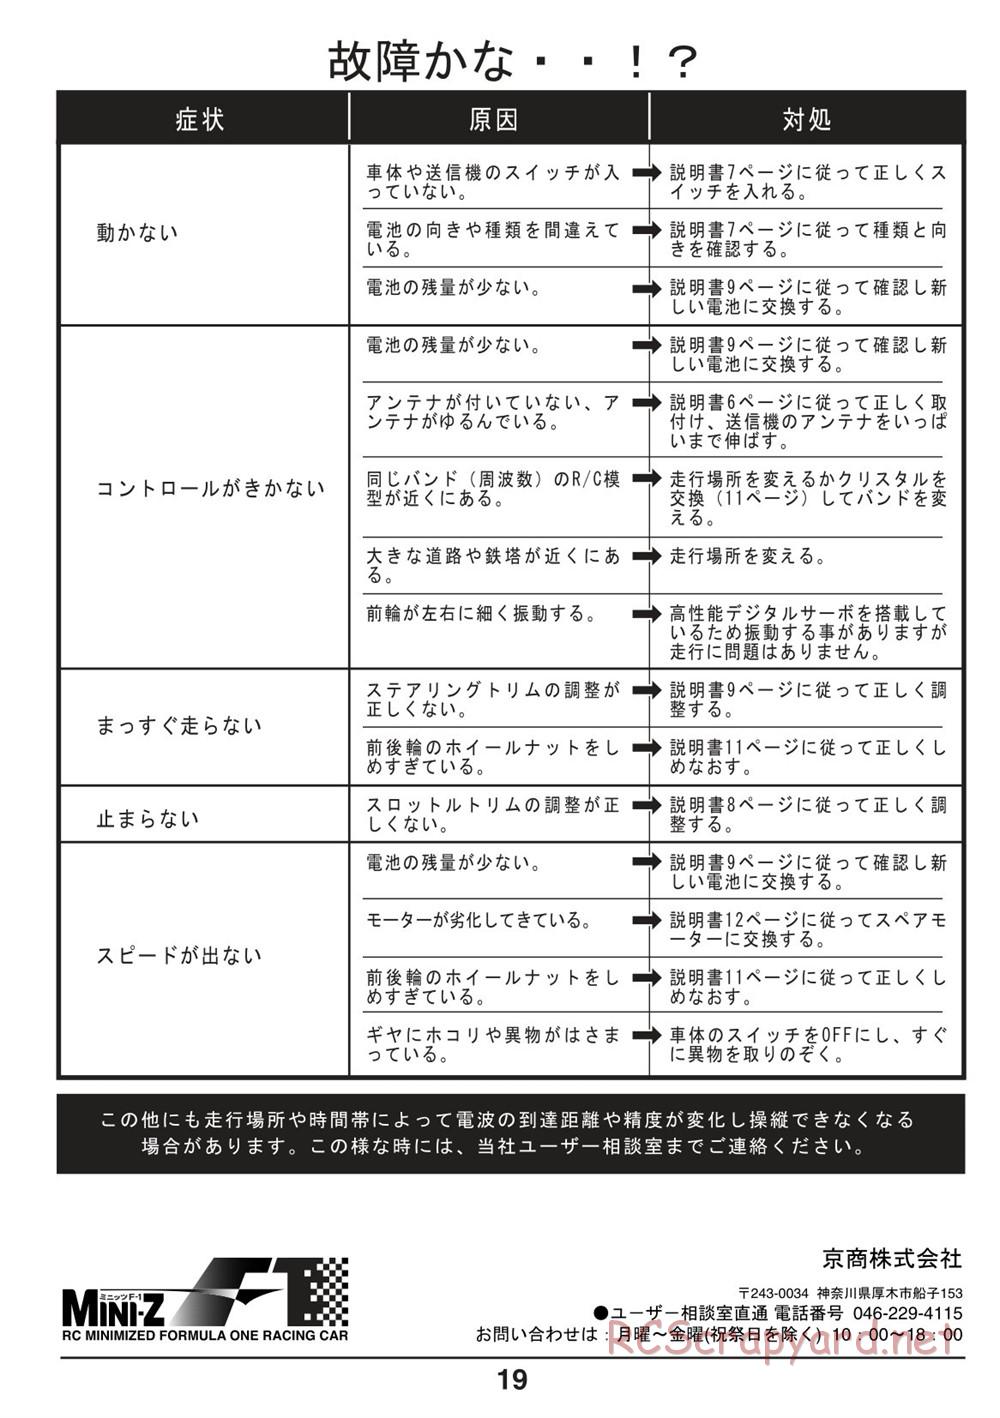 Kyosho - Mini-Z F1 - Manual - Page 19